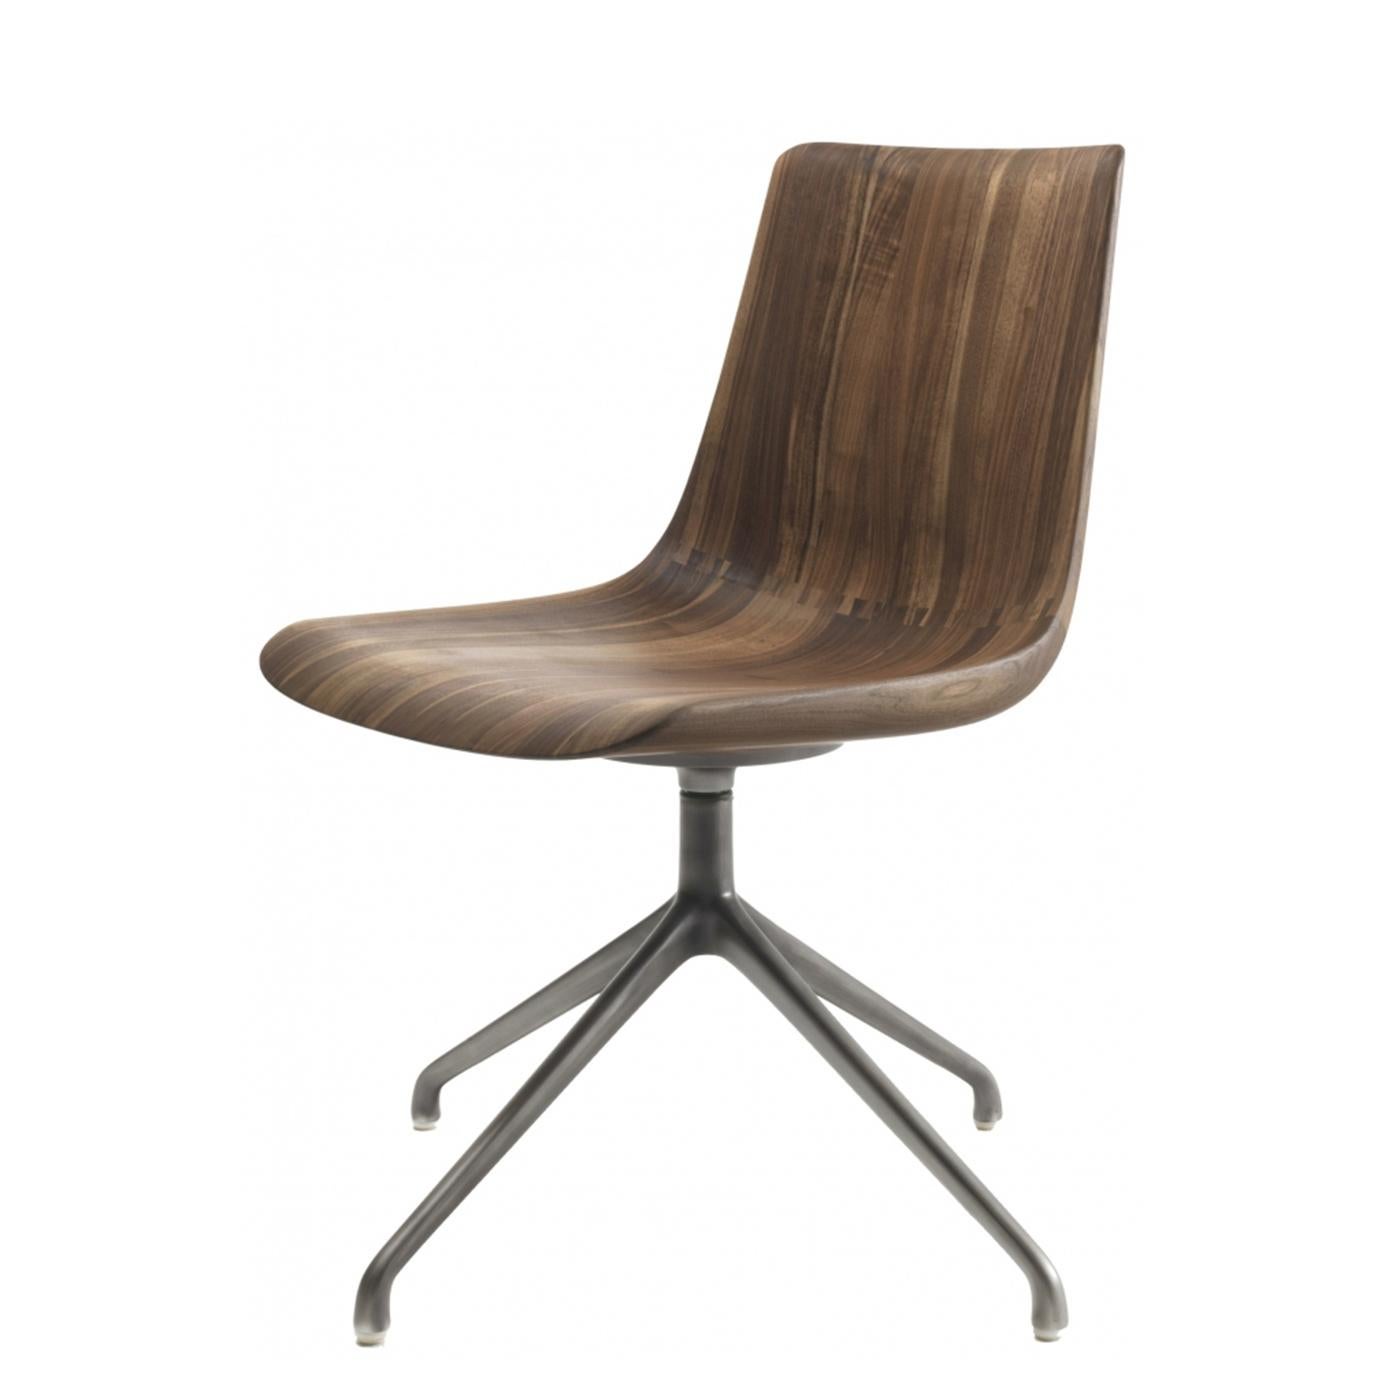 Italian Neutra Chair For Sale